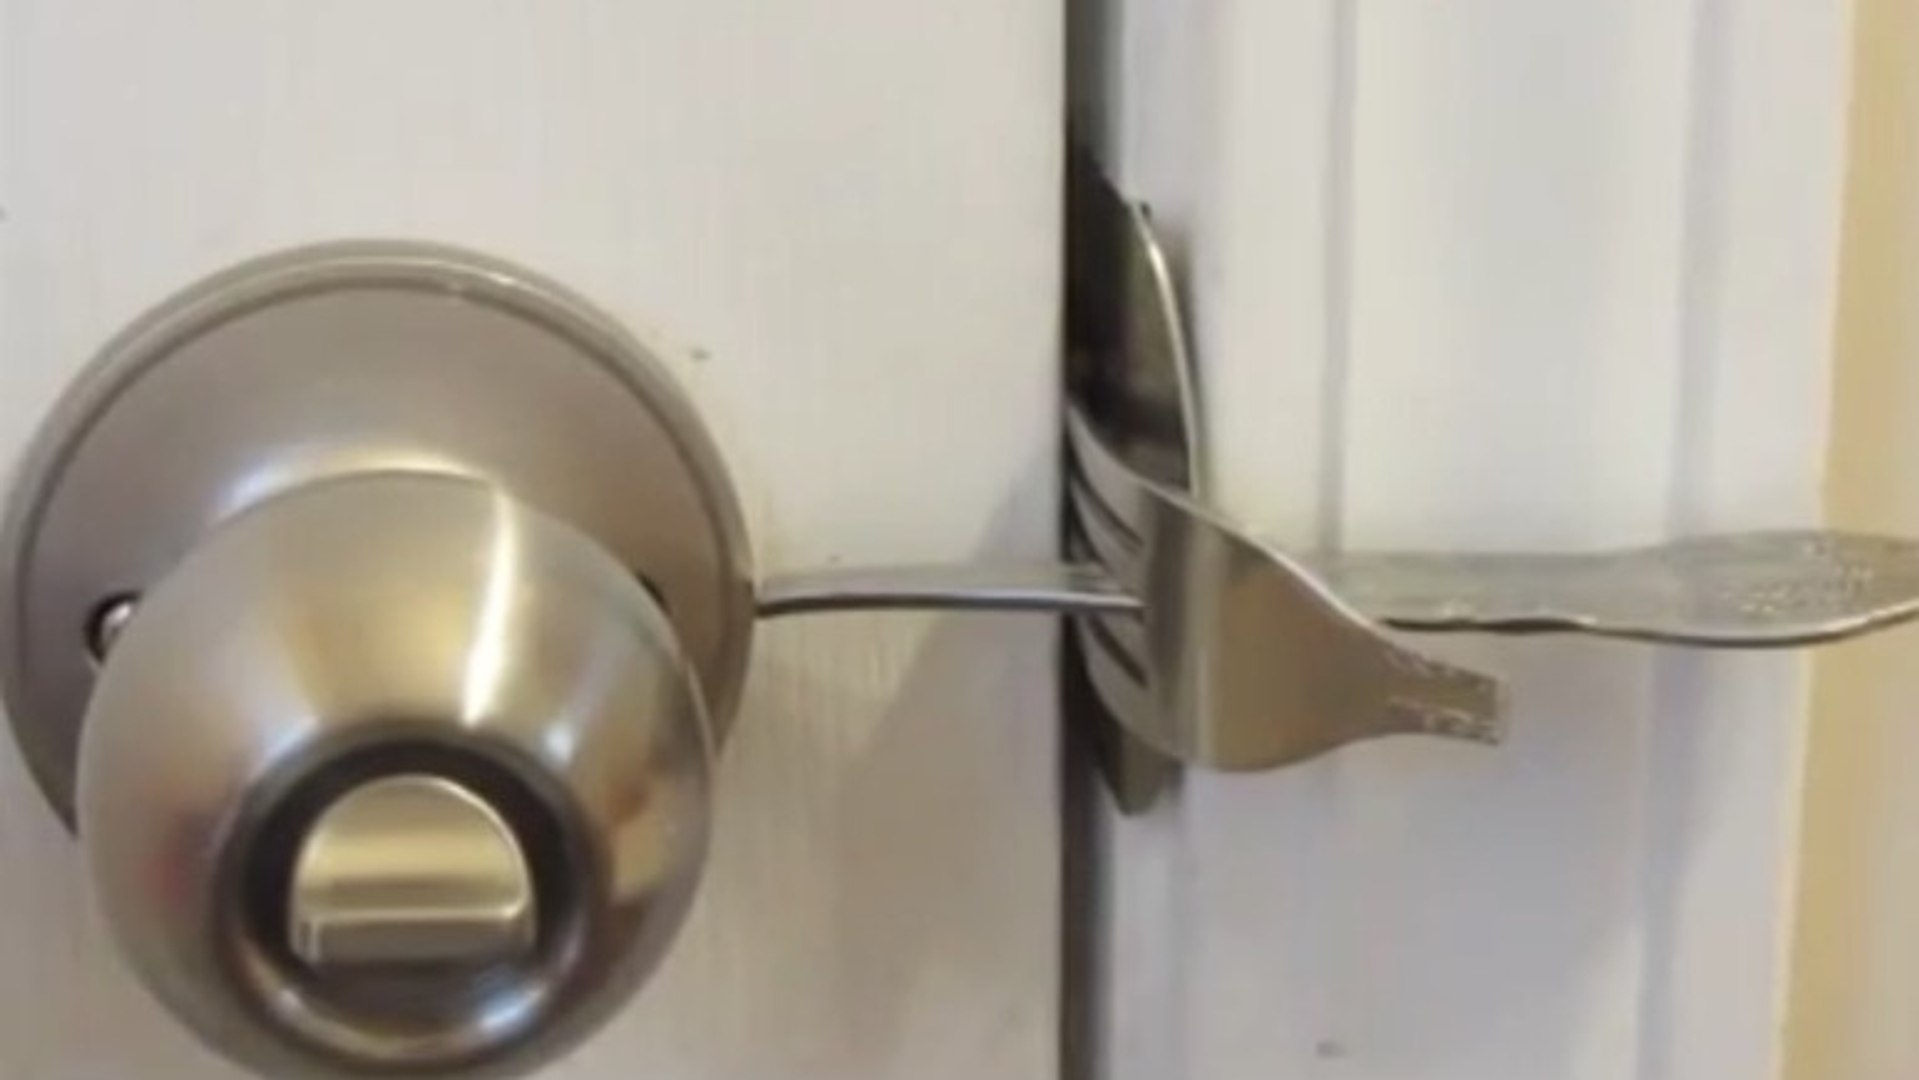 Comment bloquer une porte sans clé ? - Vidéo Dailymotion